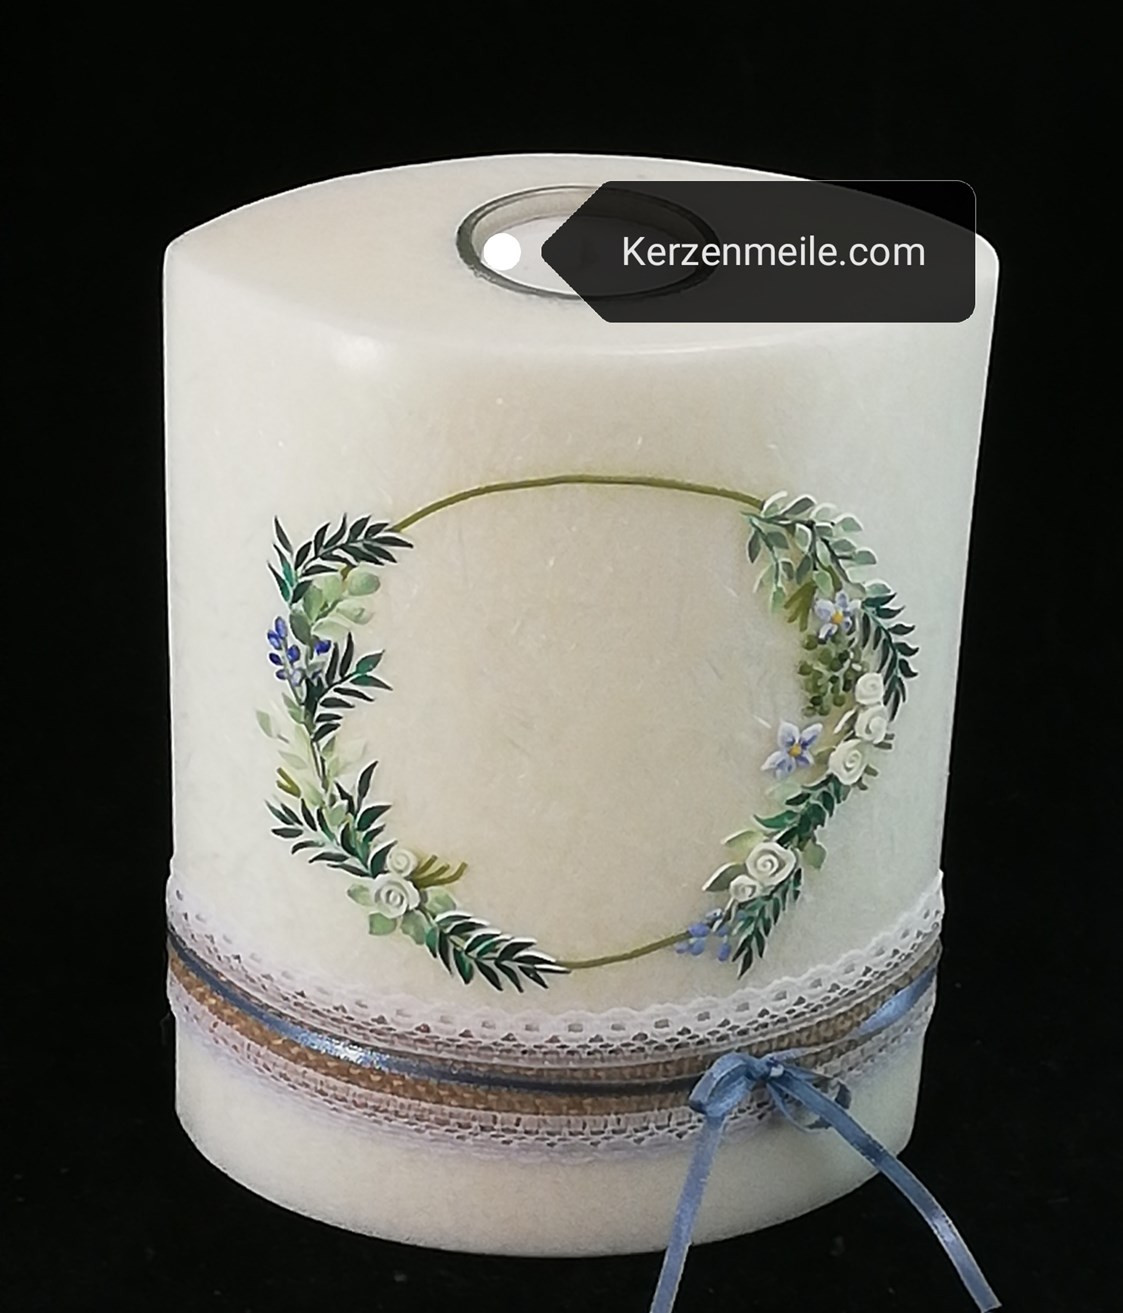 Unternehmen: Hochzeitskerze mit Blumenkranz - Kerzenmeile Margot Hulek